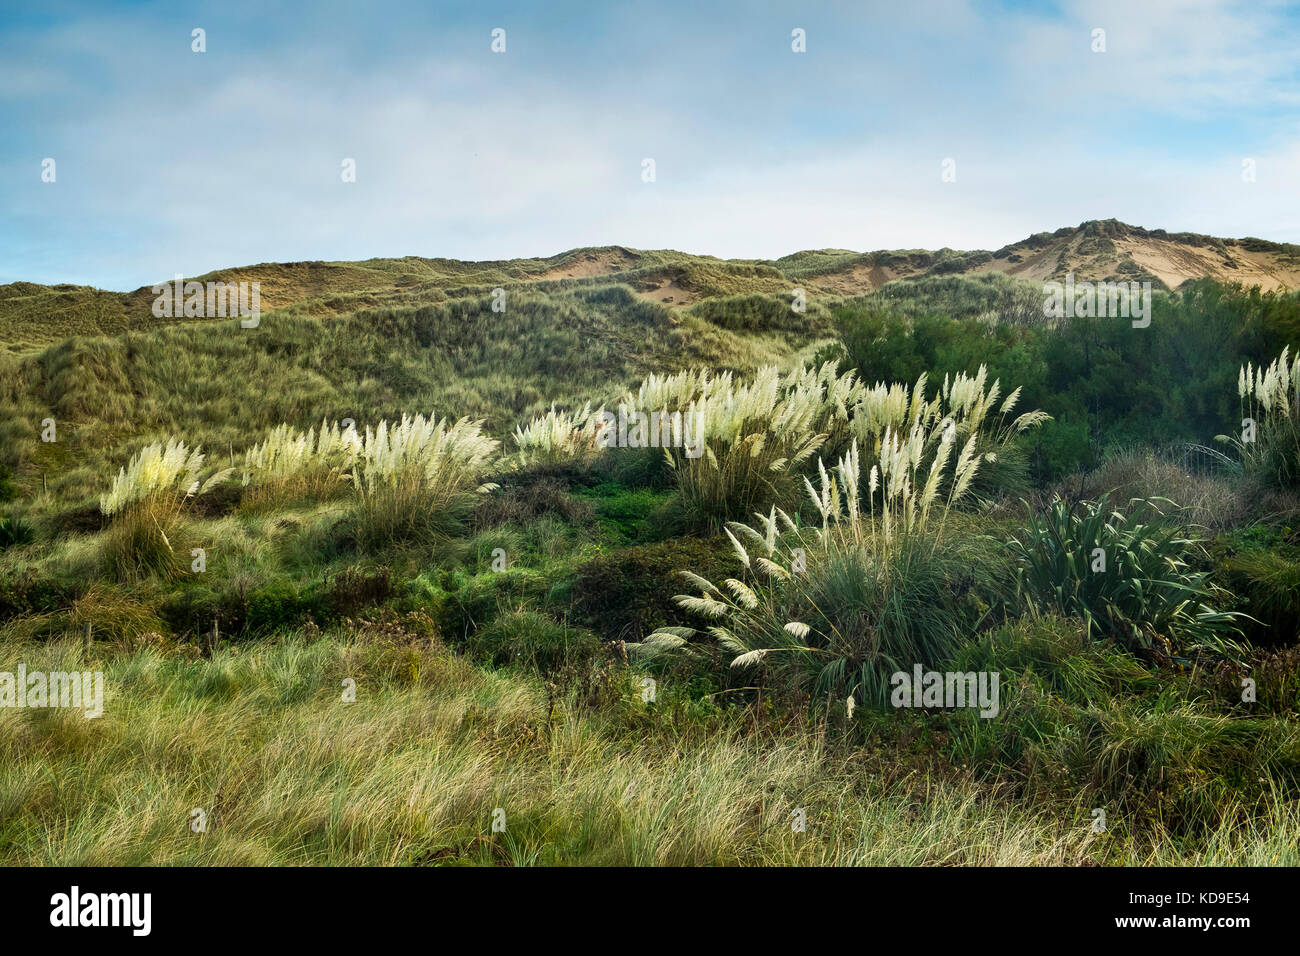 Herbe de Pampas Cortaderia selloana en pleine croissance sauvage près des dunes de sable de la baie de Holywell, dans les Cornouailles. Banque D'Images